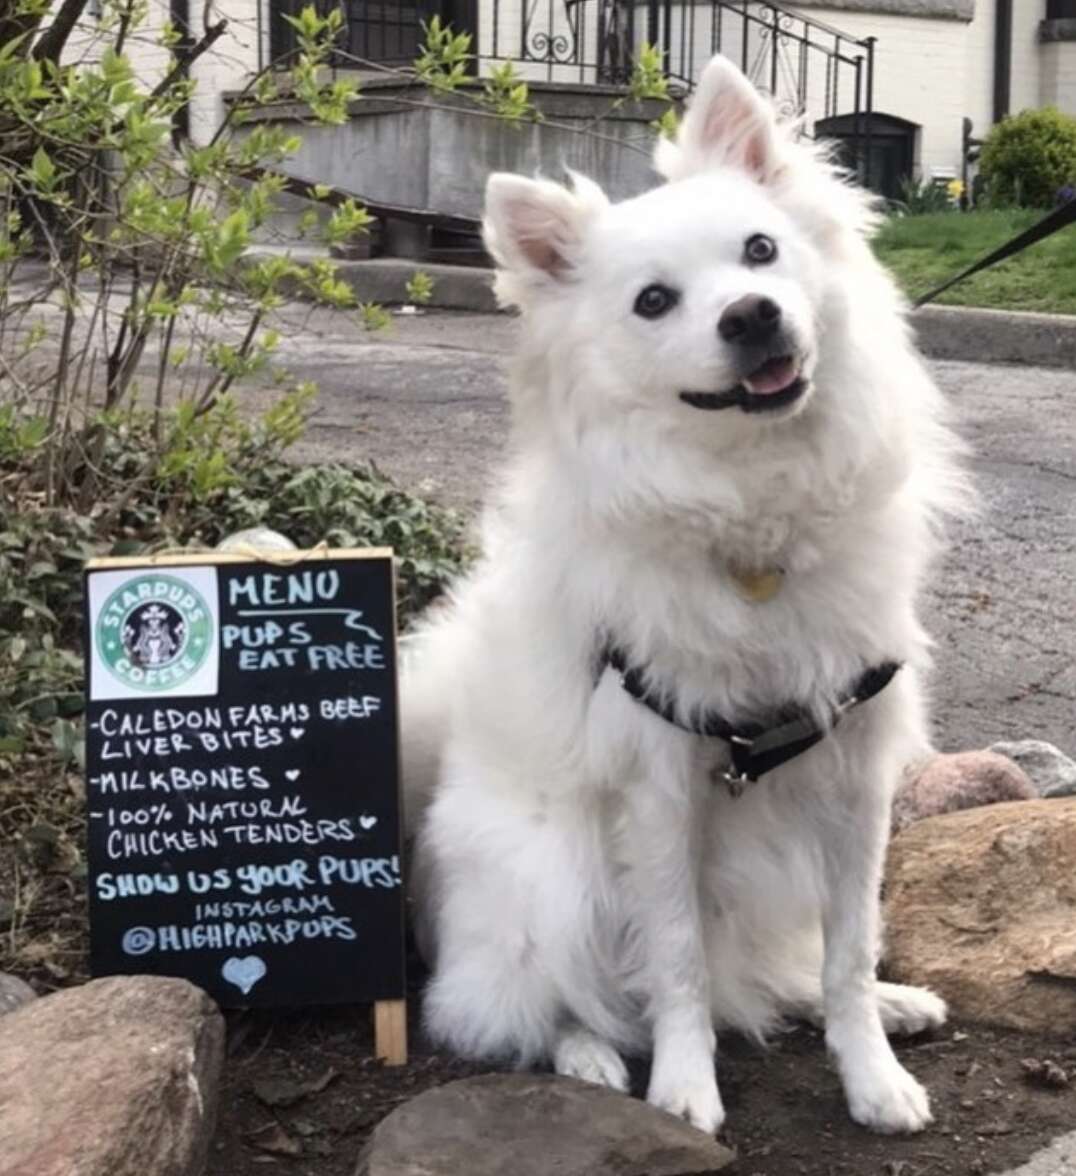 Dogs visit a dog cafe